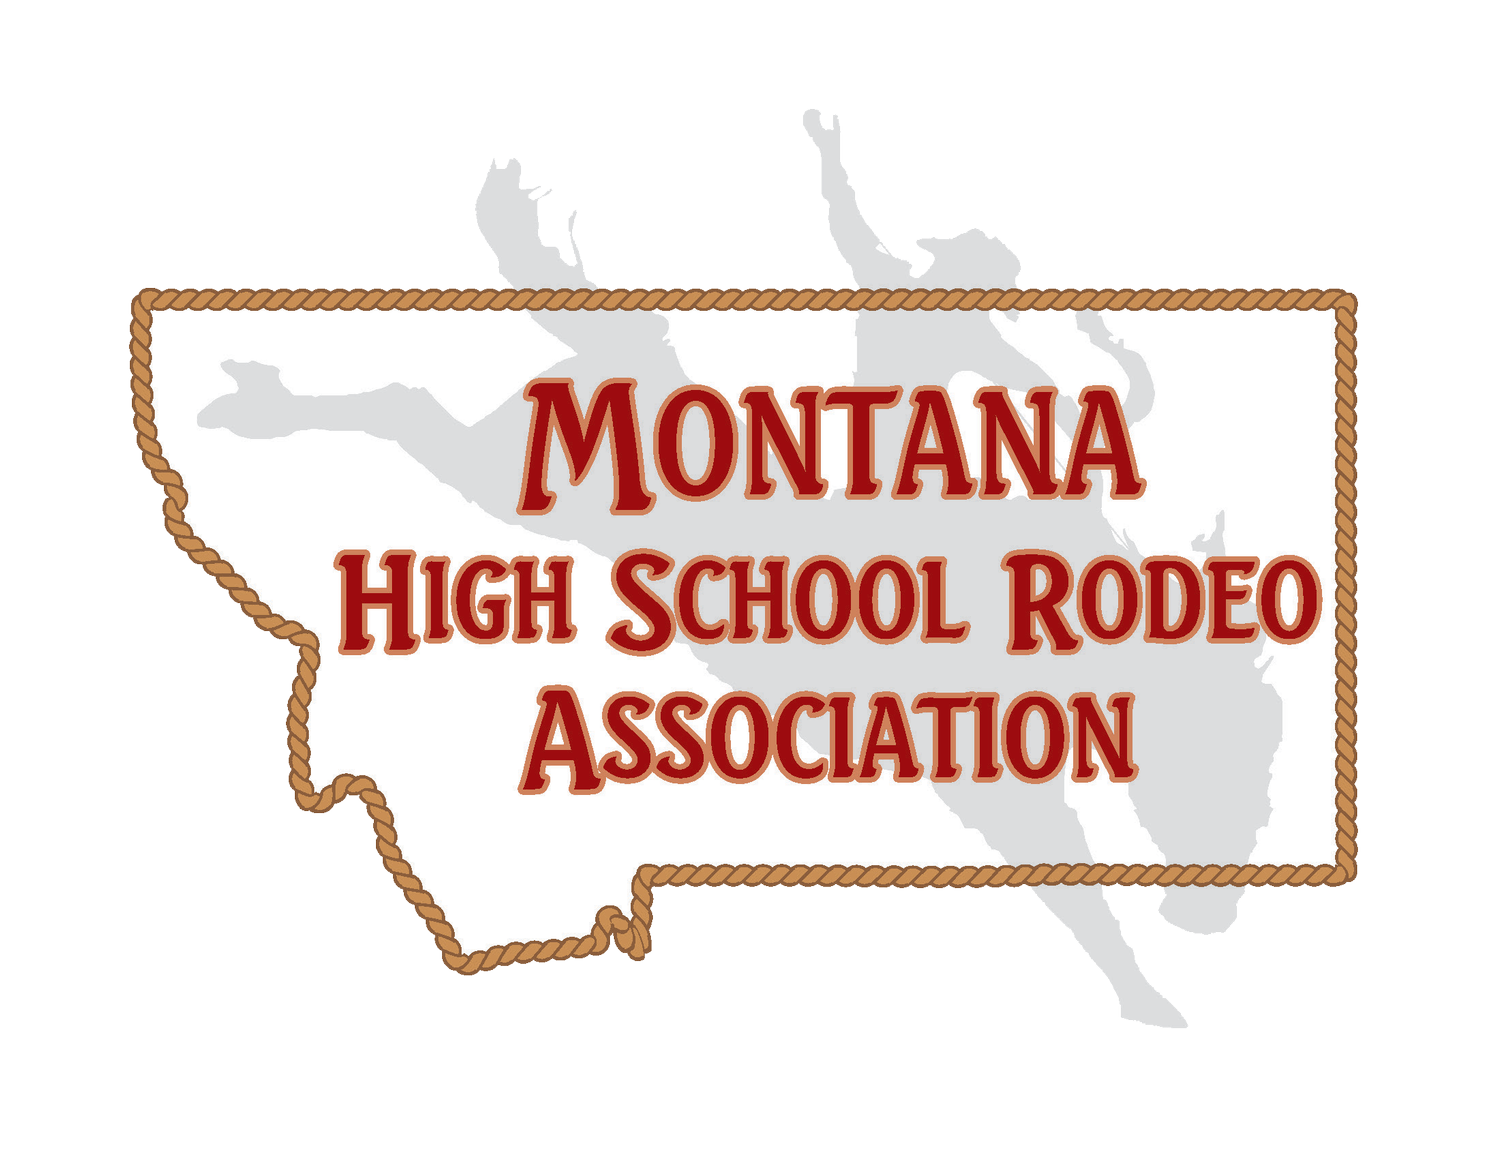 Montana High School Rodeo Association